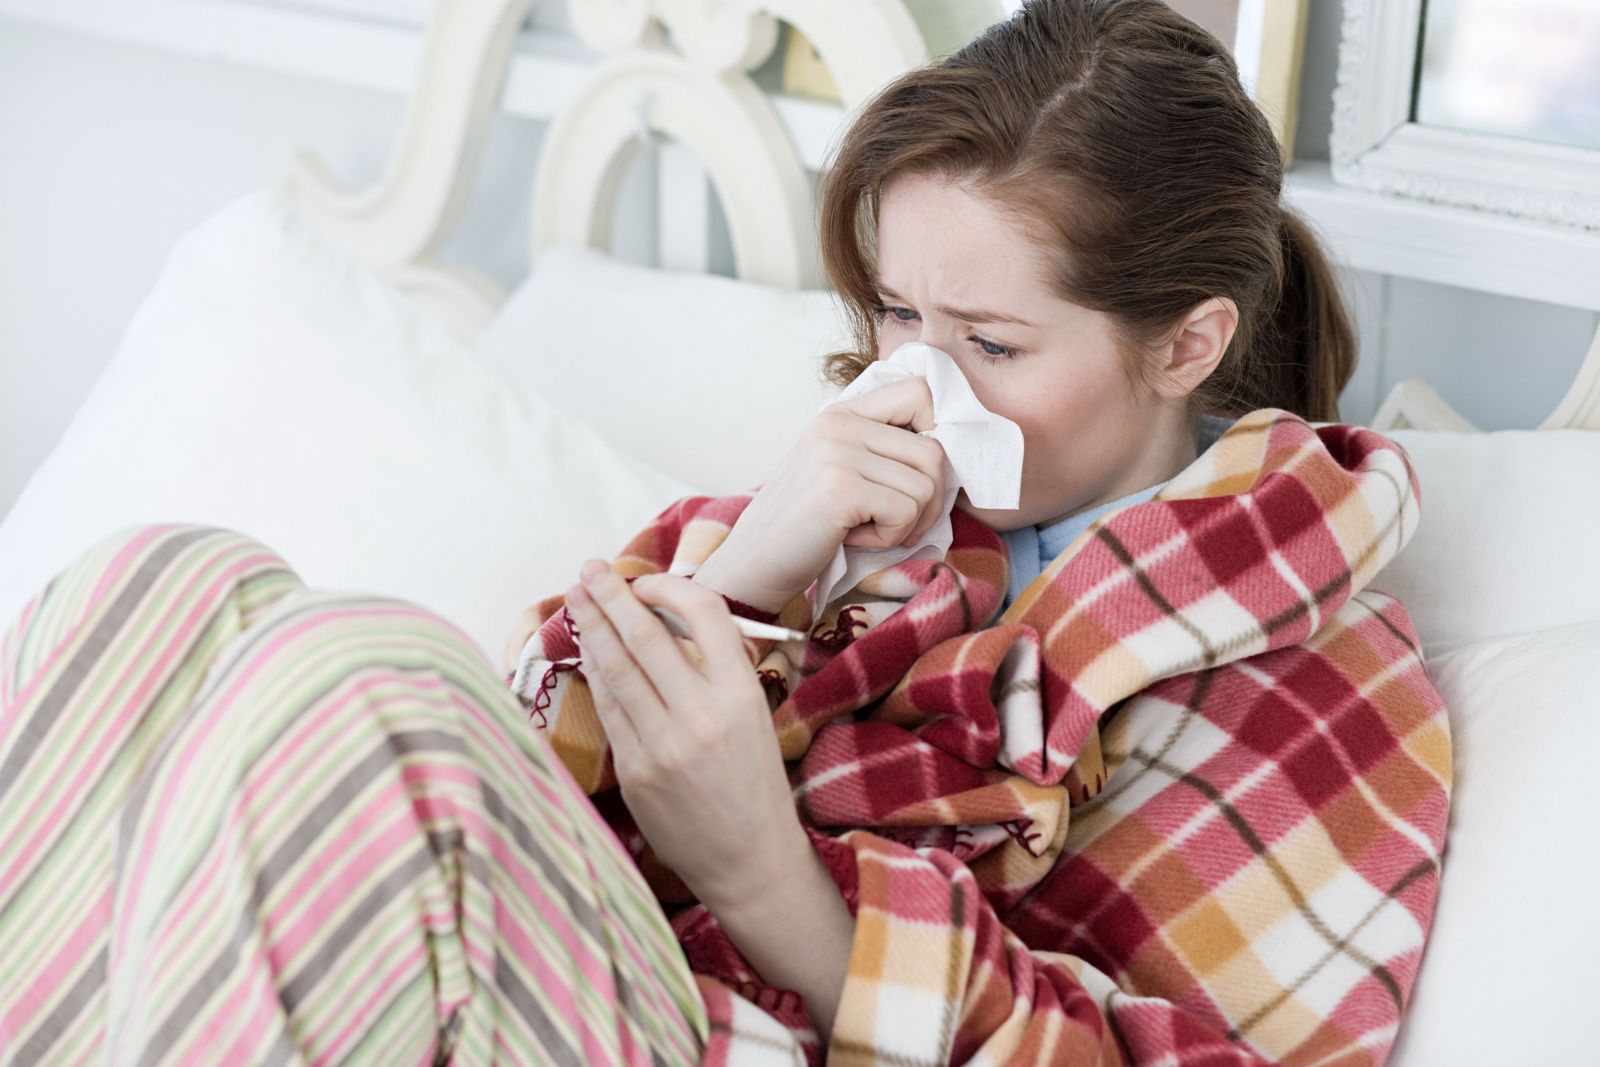   Phụ nữ mang thai, người có hệ miễn dịch yếu nên đi khám nếu có các triệu chứng cúm  